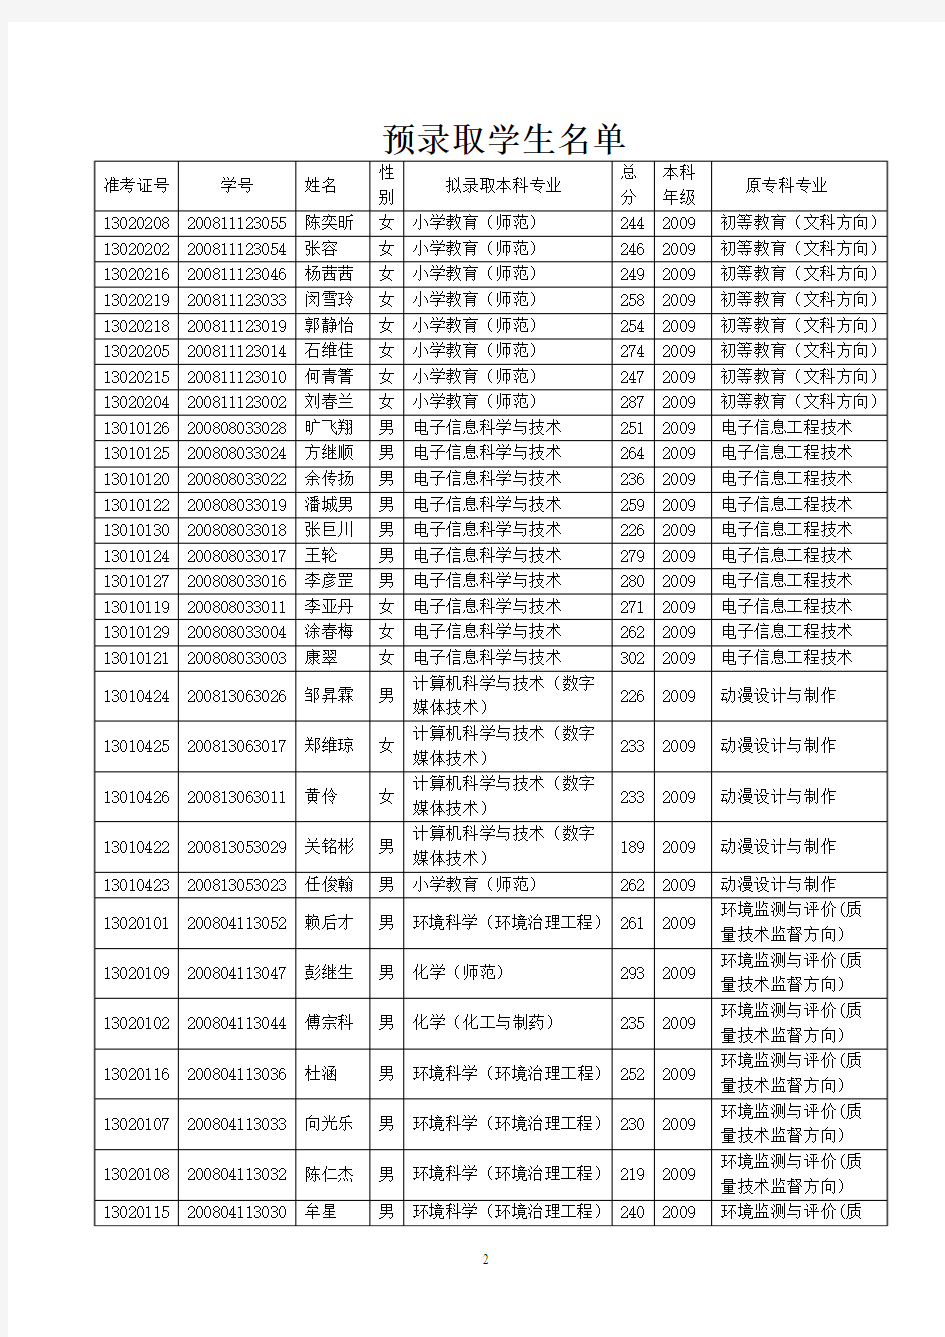 重庆文理学院2011年“专升本”预录名单公示